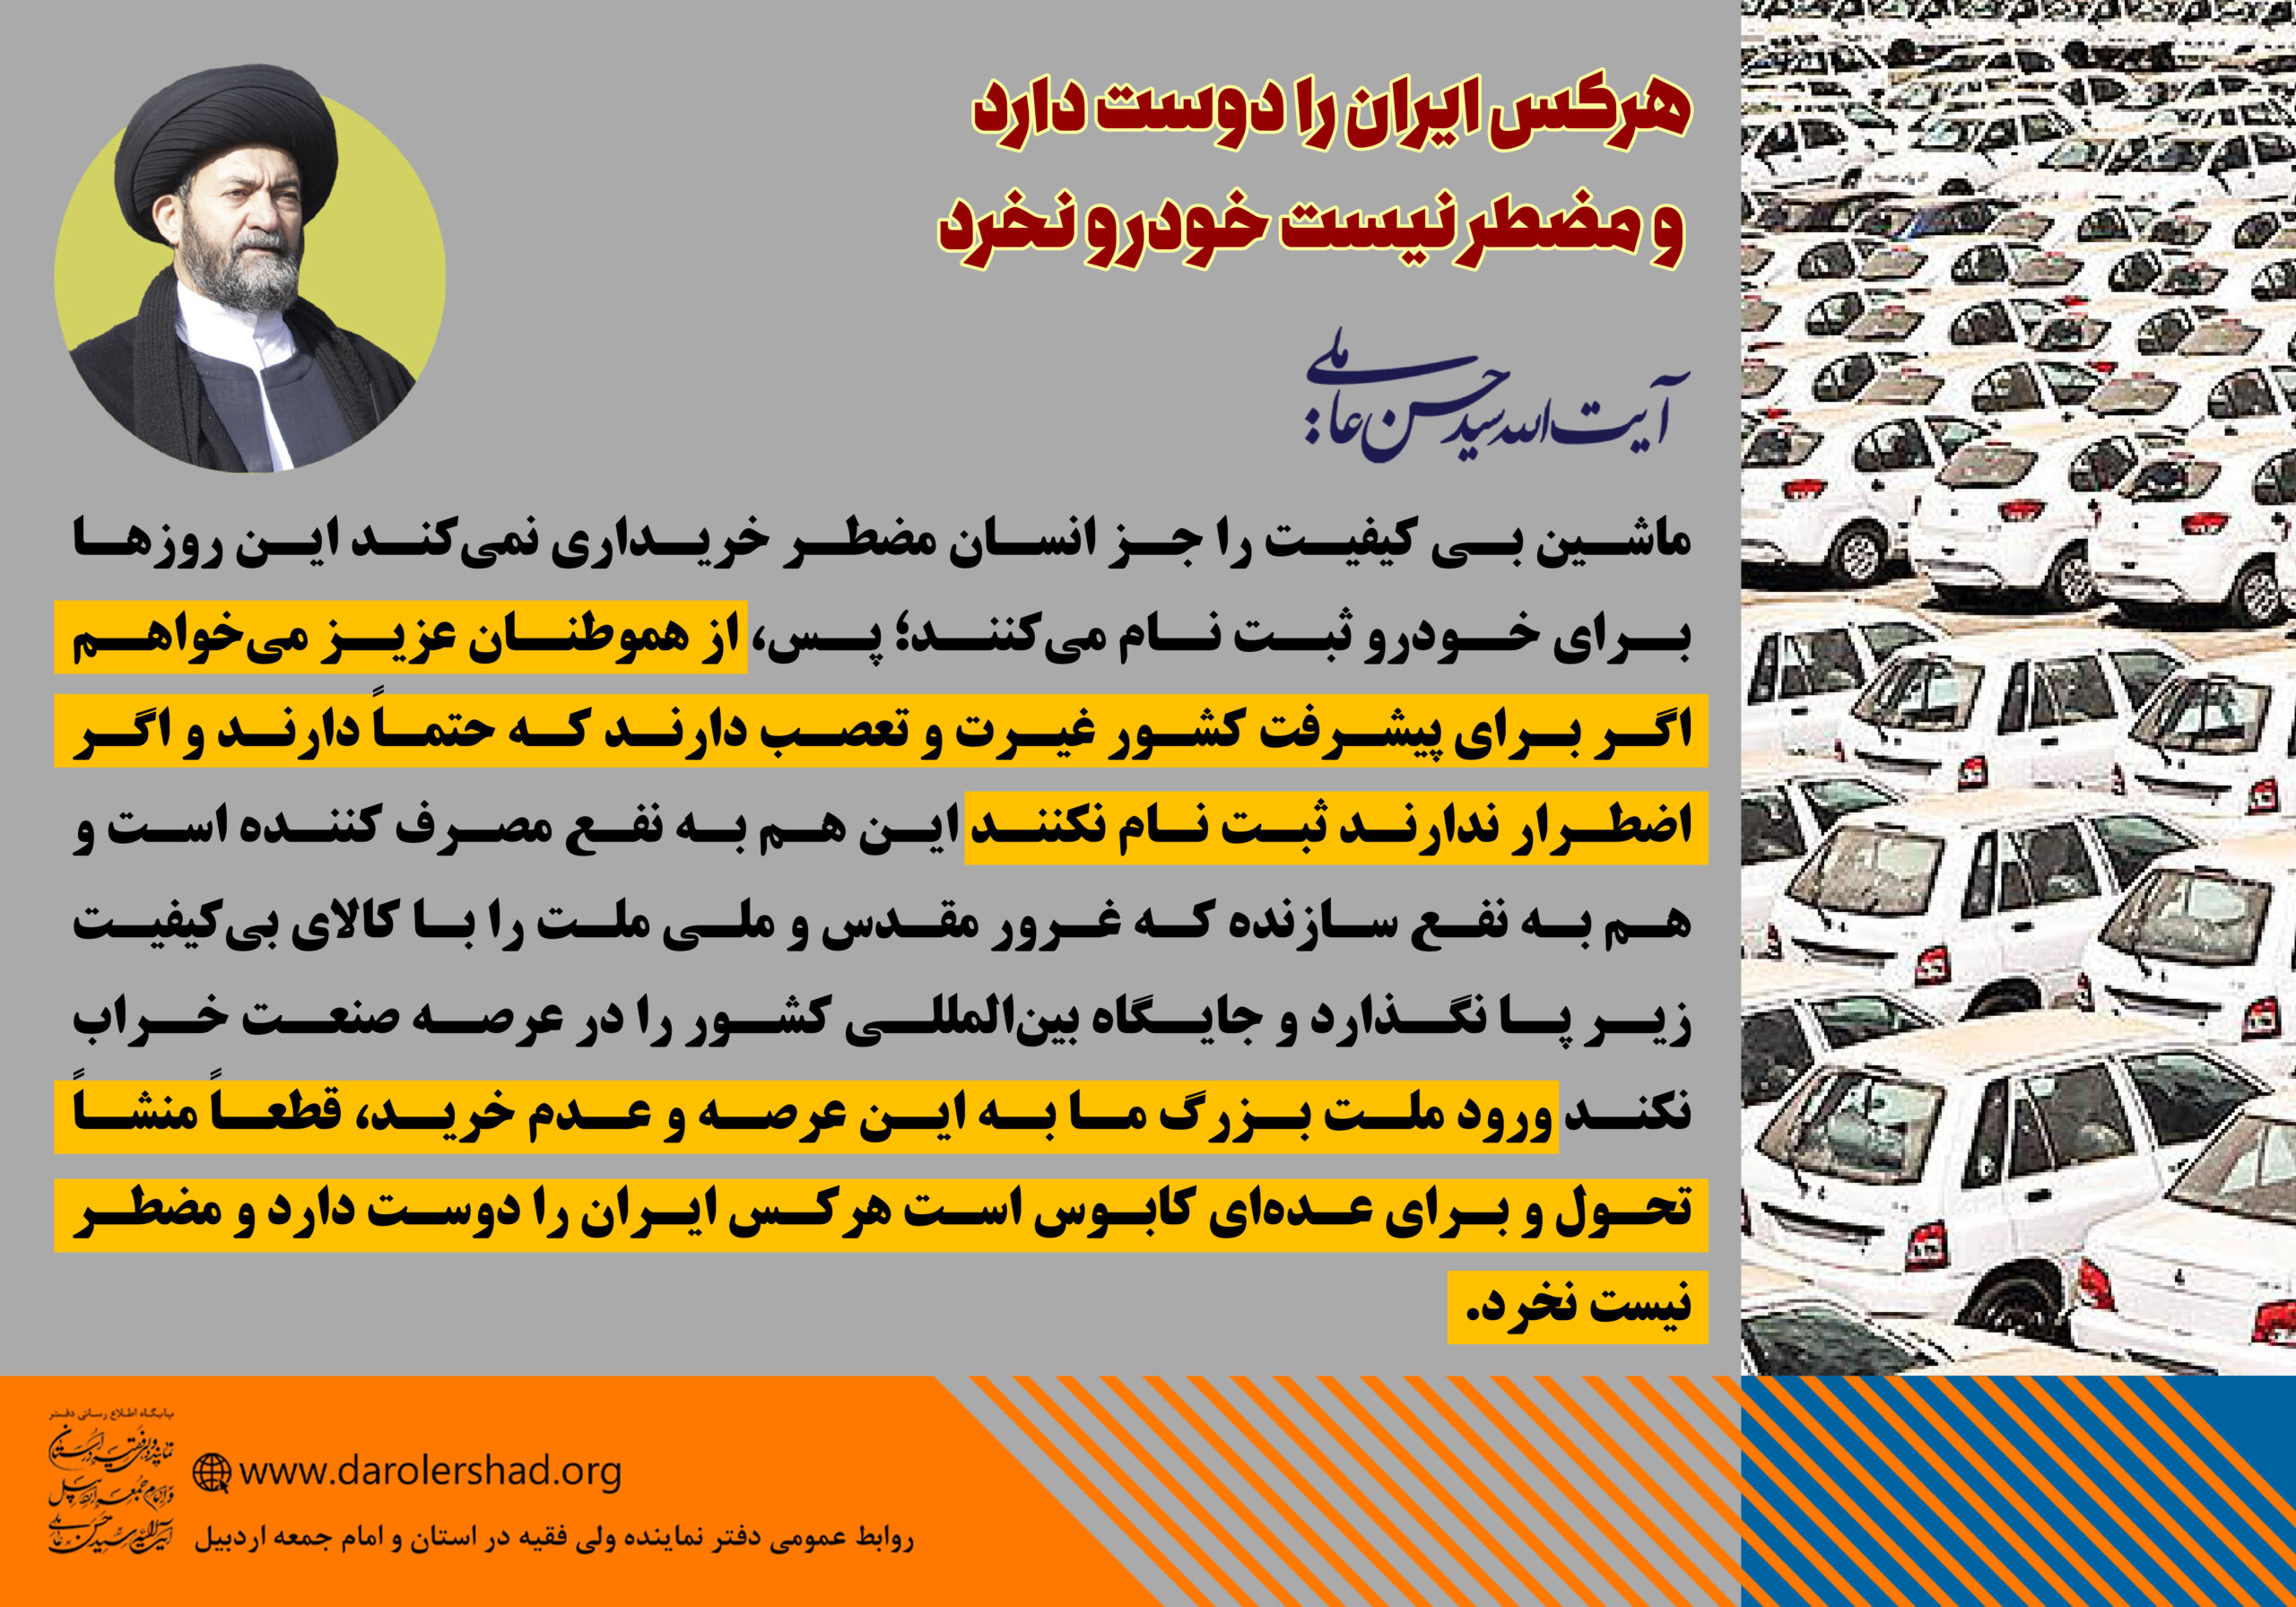 هرکس ایران را دوست دارد و مضطر نیست خودرو نخرد